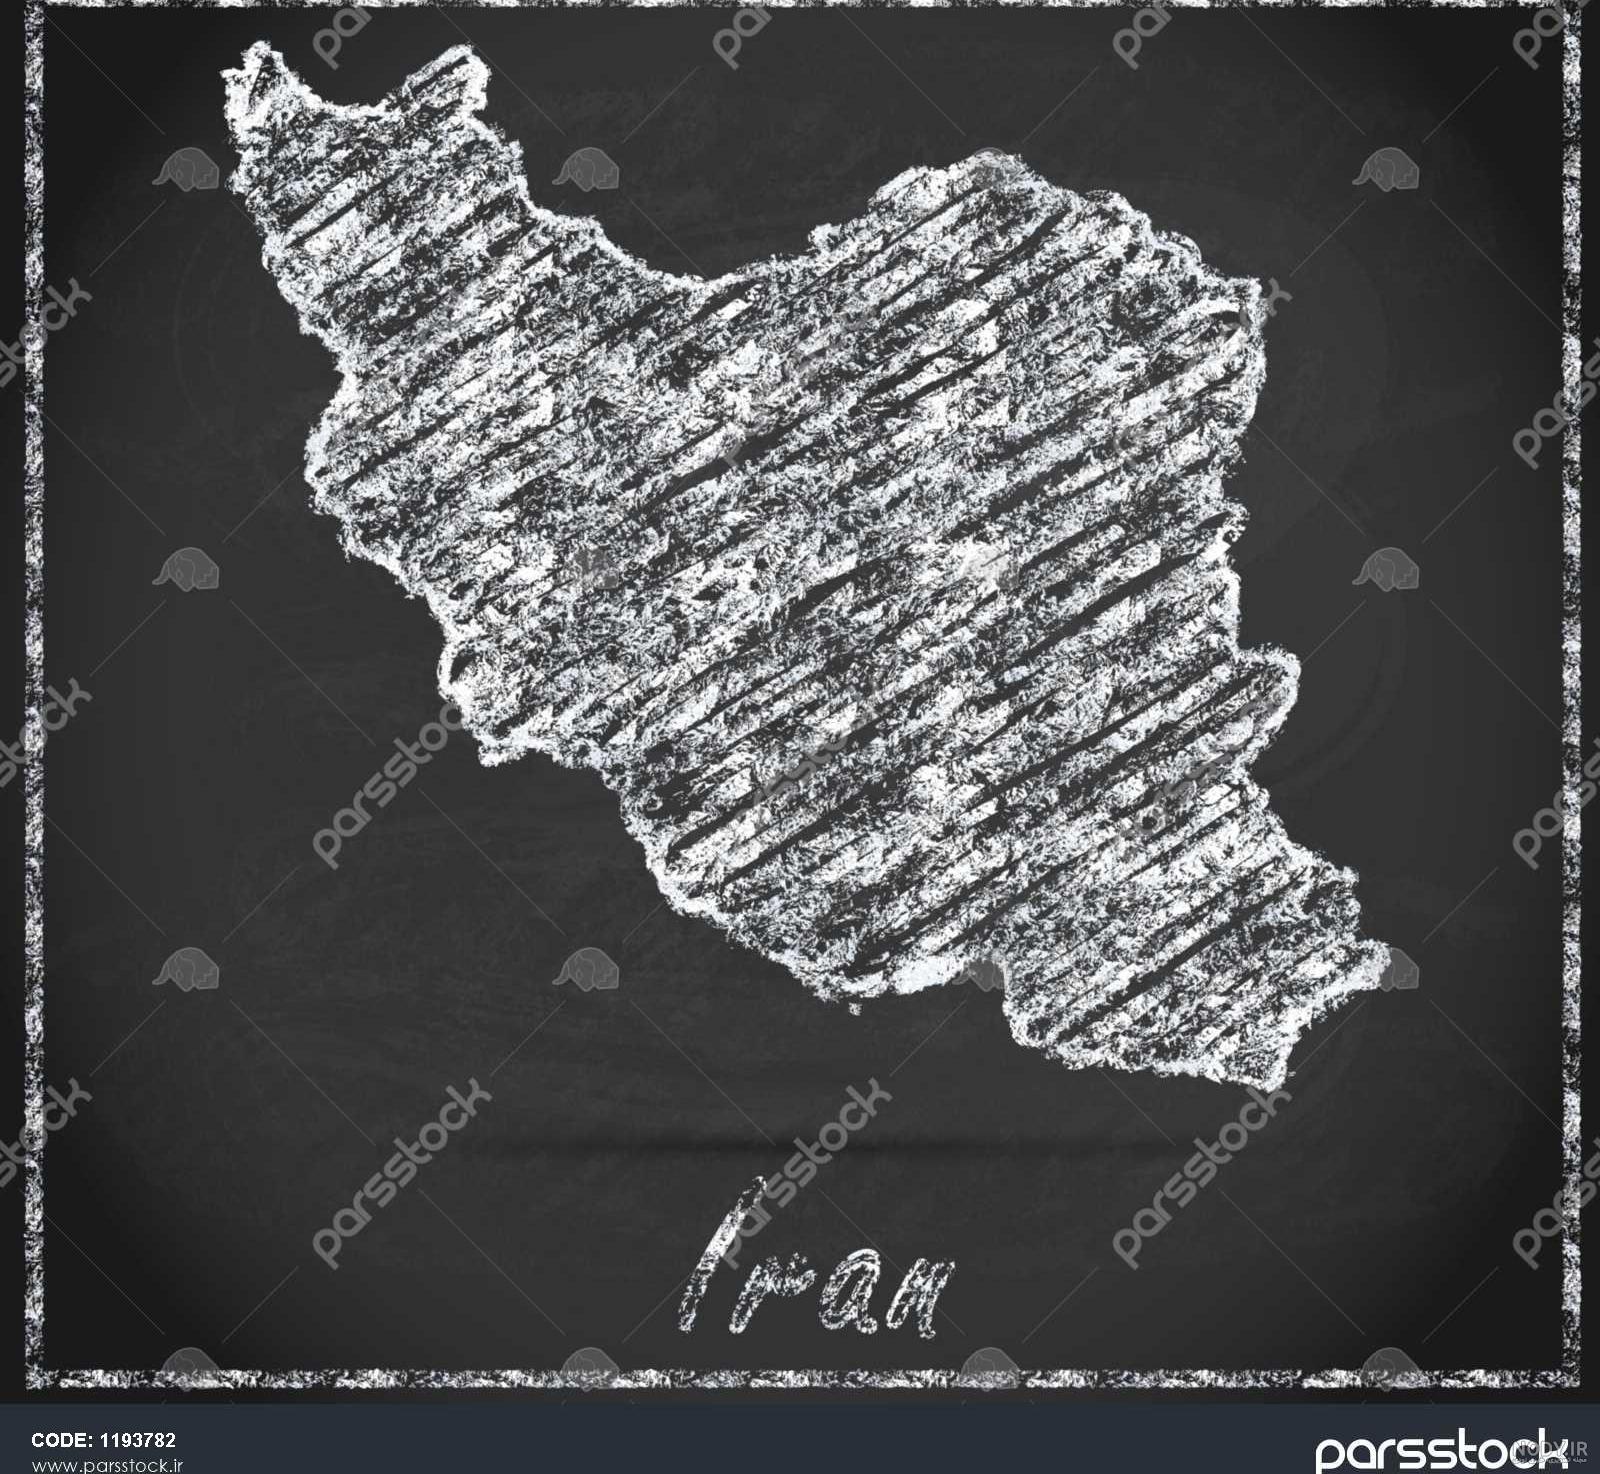 عکس نقشه ایران با پس زمینه مشکی